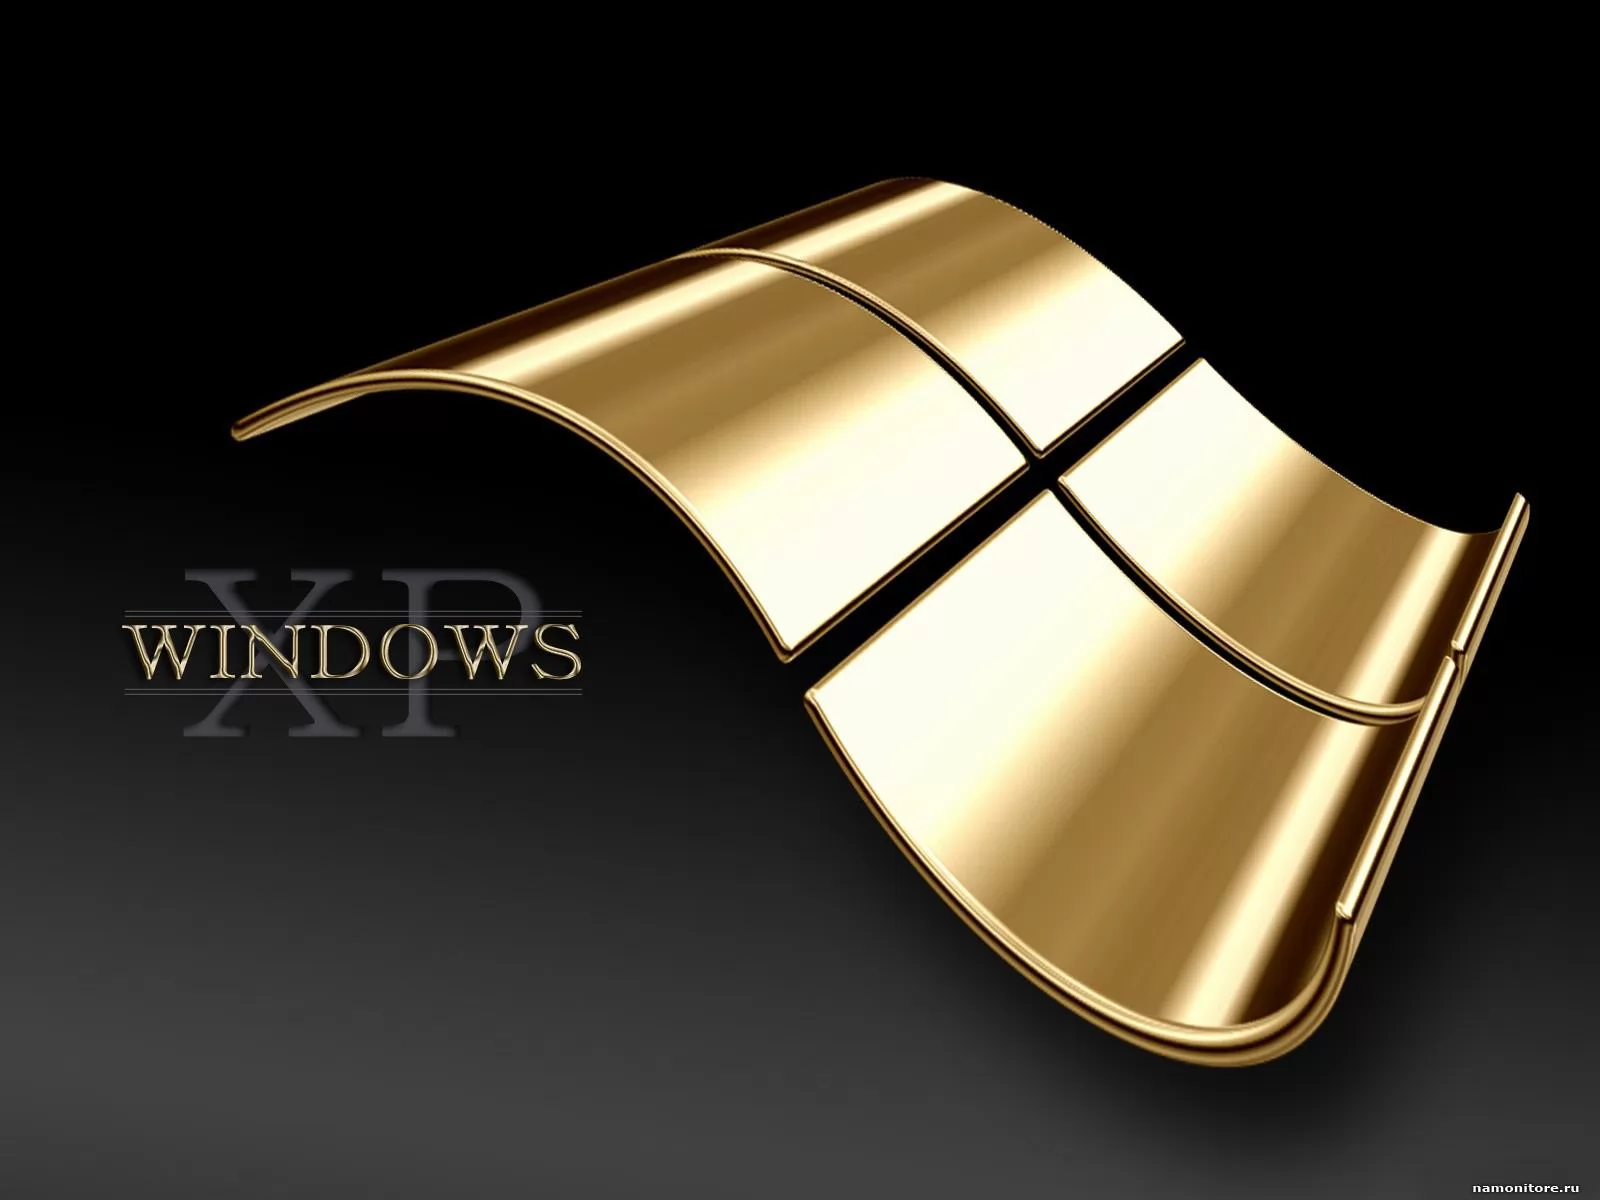 Windows золото, золотистое, компьютеры и программы, рисованное, чёрное х